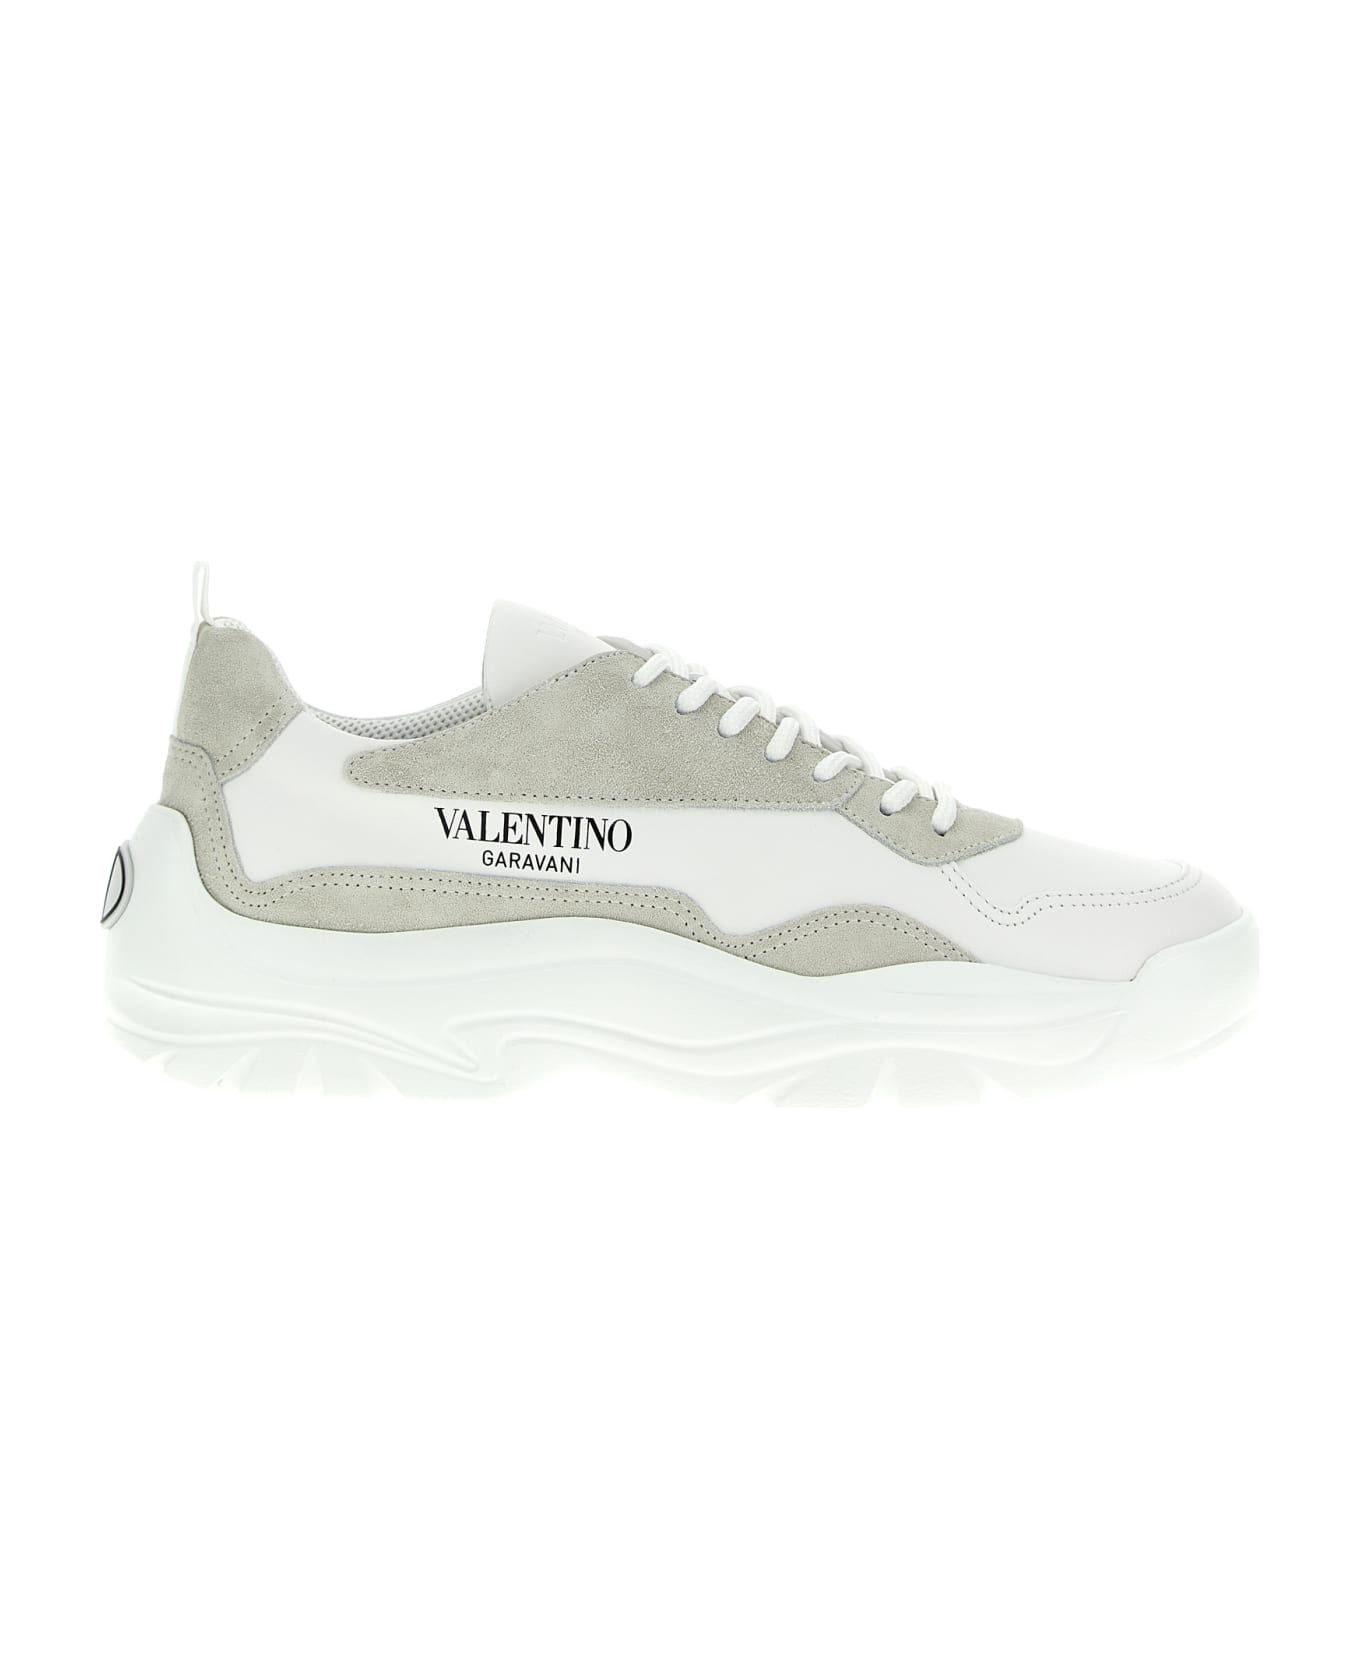 Valentino Garavani Gumboy Sneakers - White